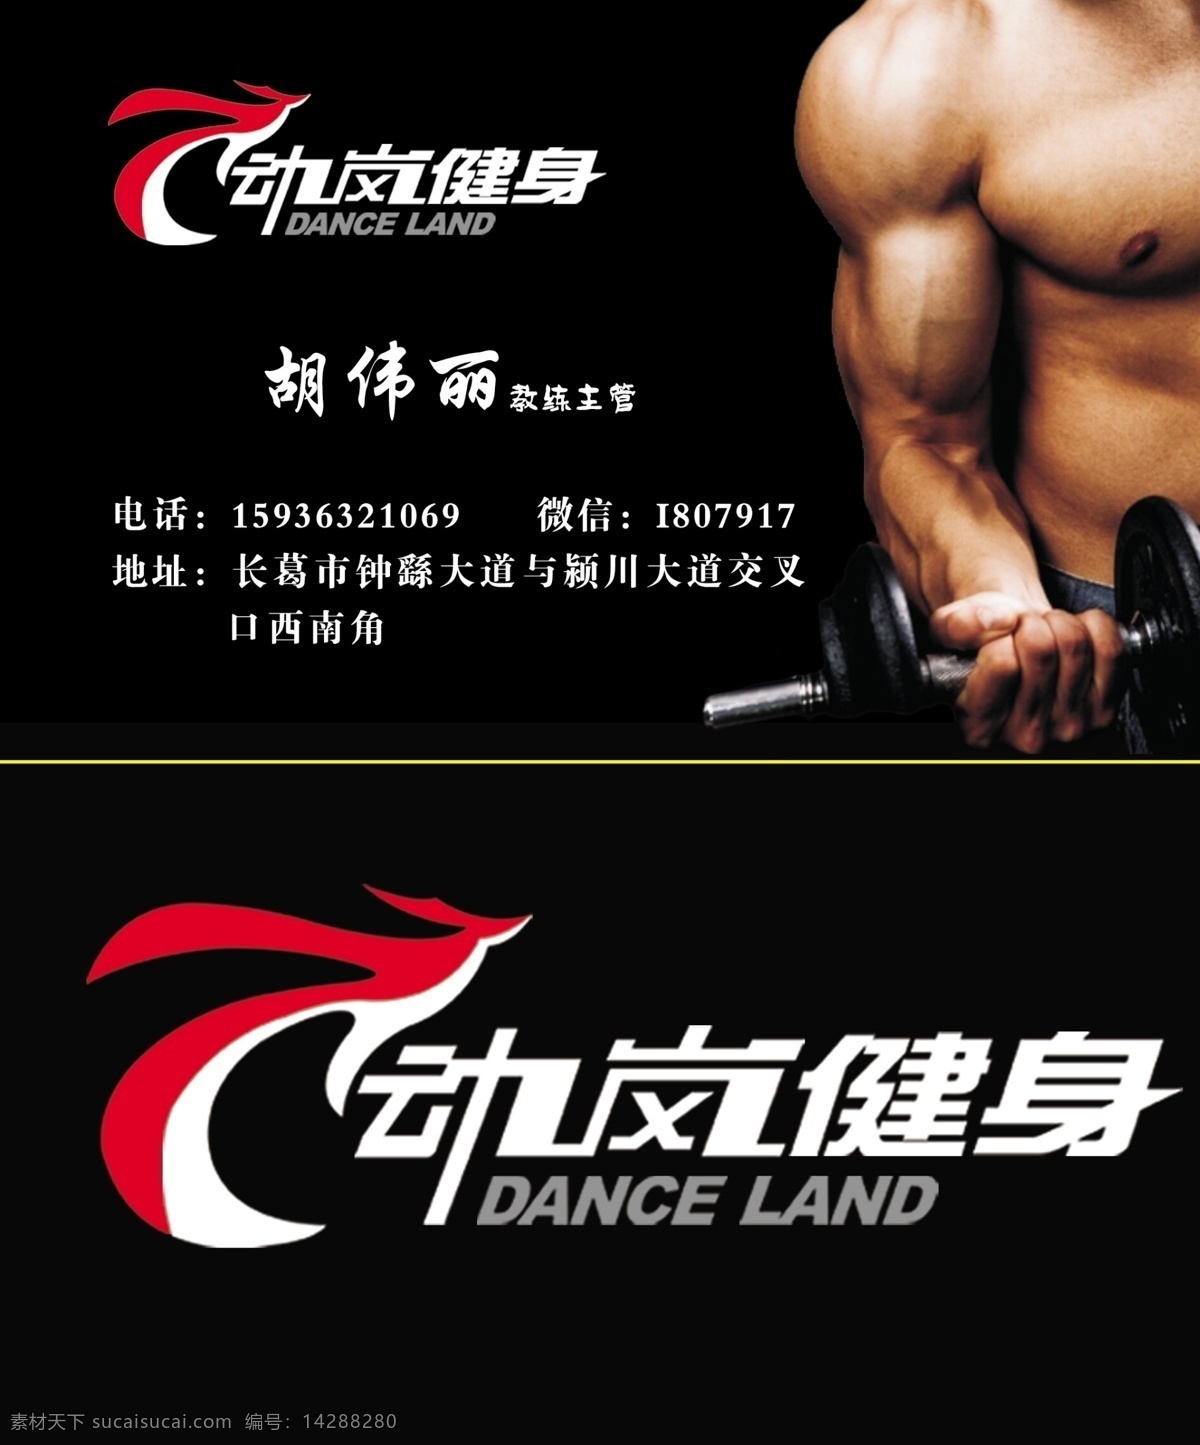 动 岚 健身 名片 正反面 动岚健身 卡片 展示 宣传 体育 健身器材 强健体魄 分层